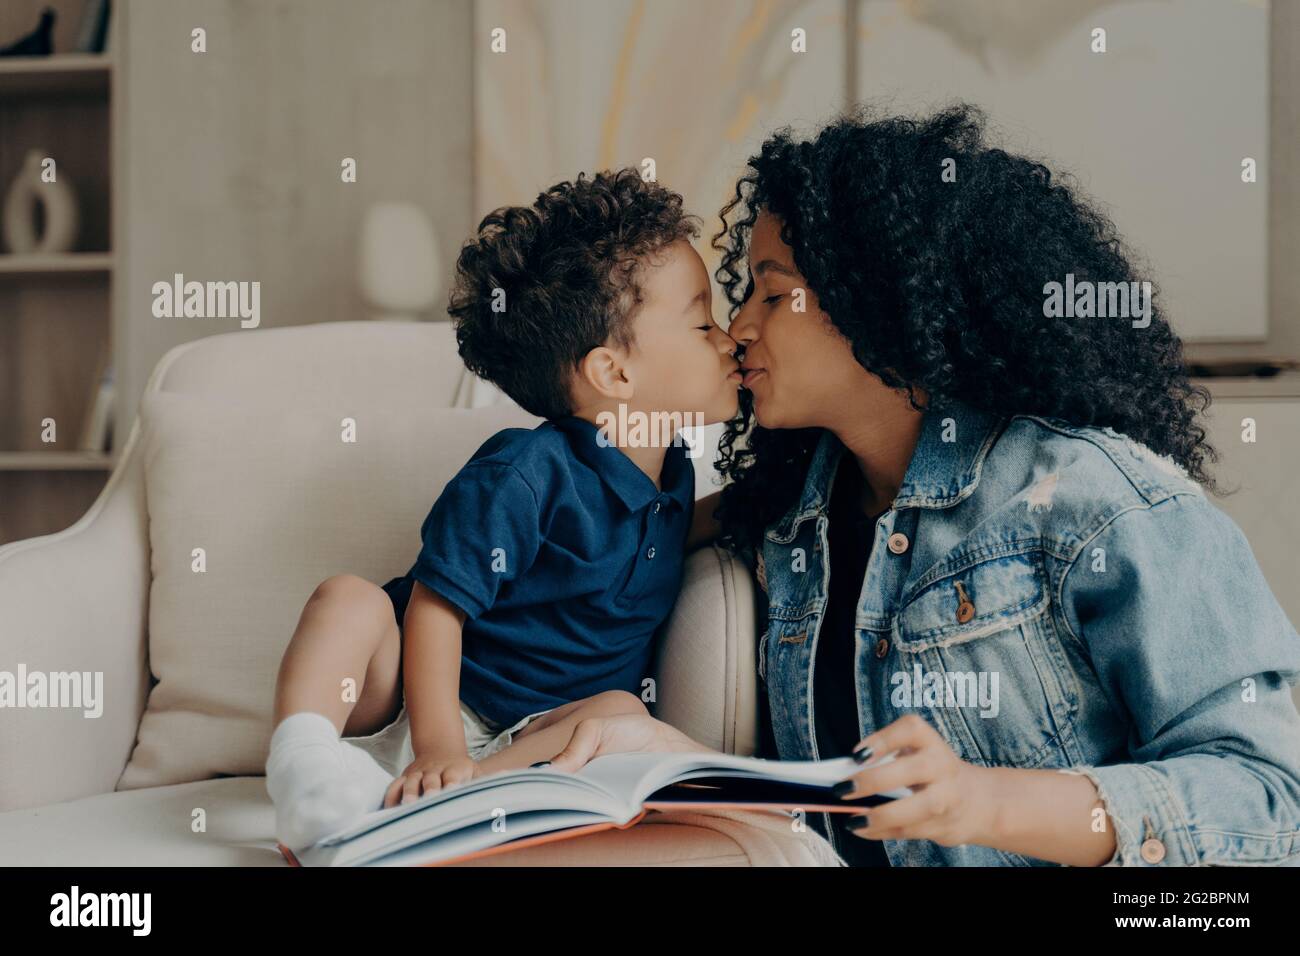 Glückliche gemischte Rasse junge Mutter mit kleinen Kind küssen sich gegenseitig, während die Zeit zusammen zu Hause verbringen Stockfoto